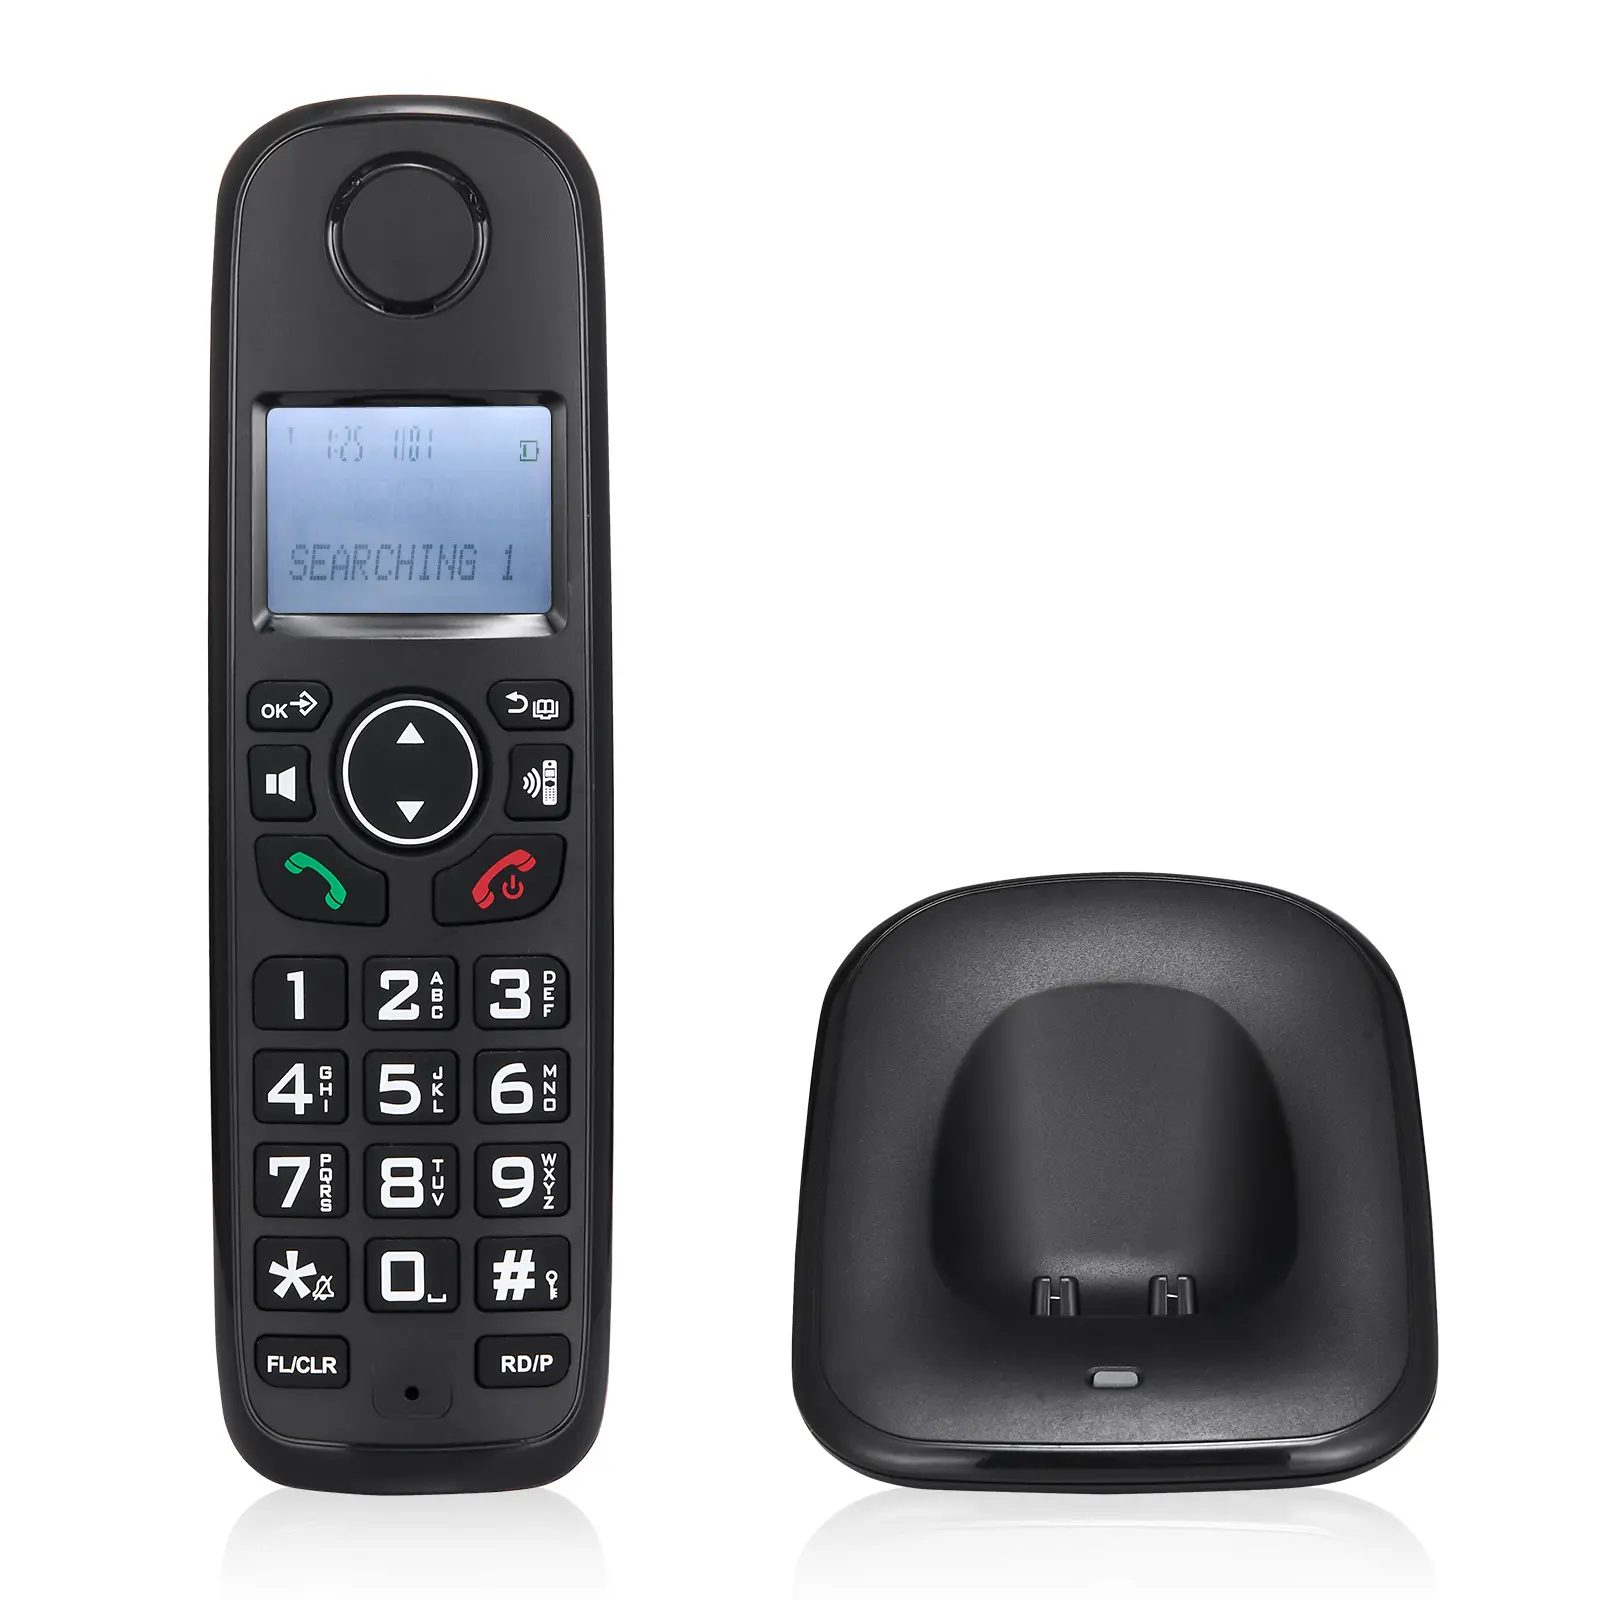 DECT6.0拡張可能なコードレス電話システム、オフィスサポート用の3回線発信者ID電話5ハンドセット固定電話テレフォノ